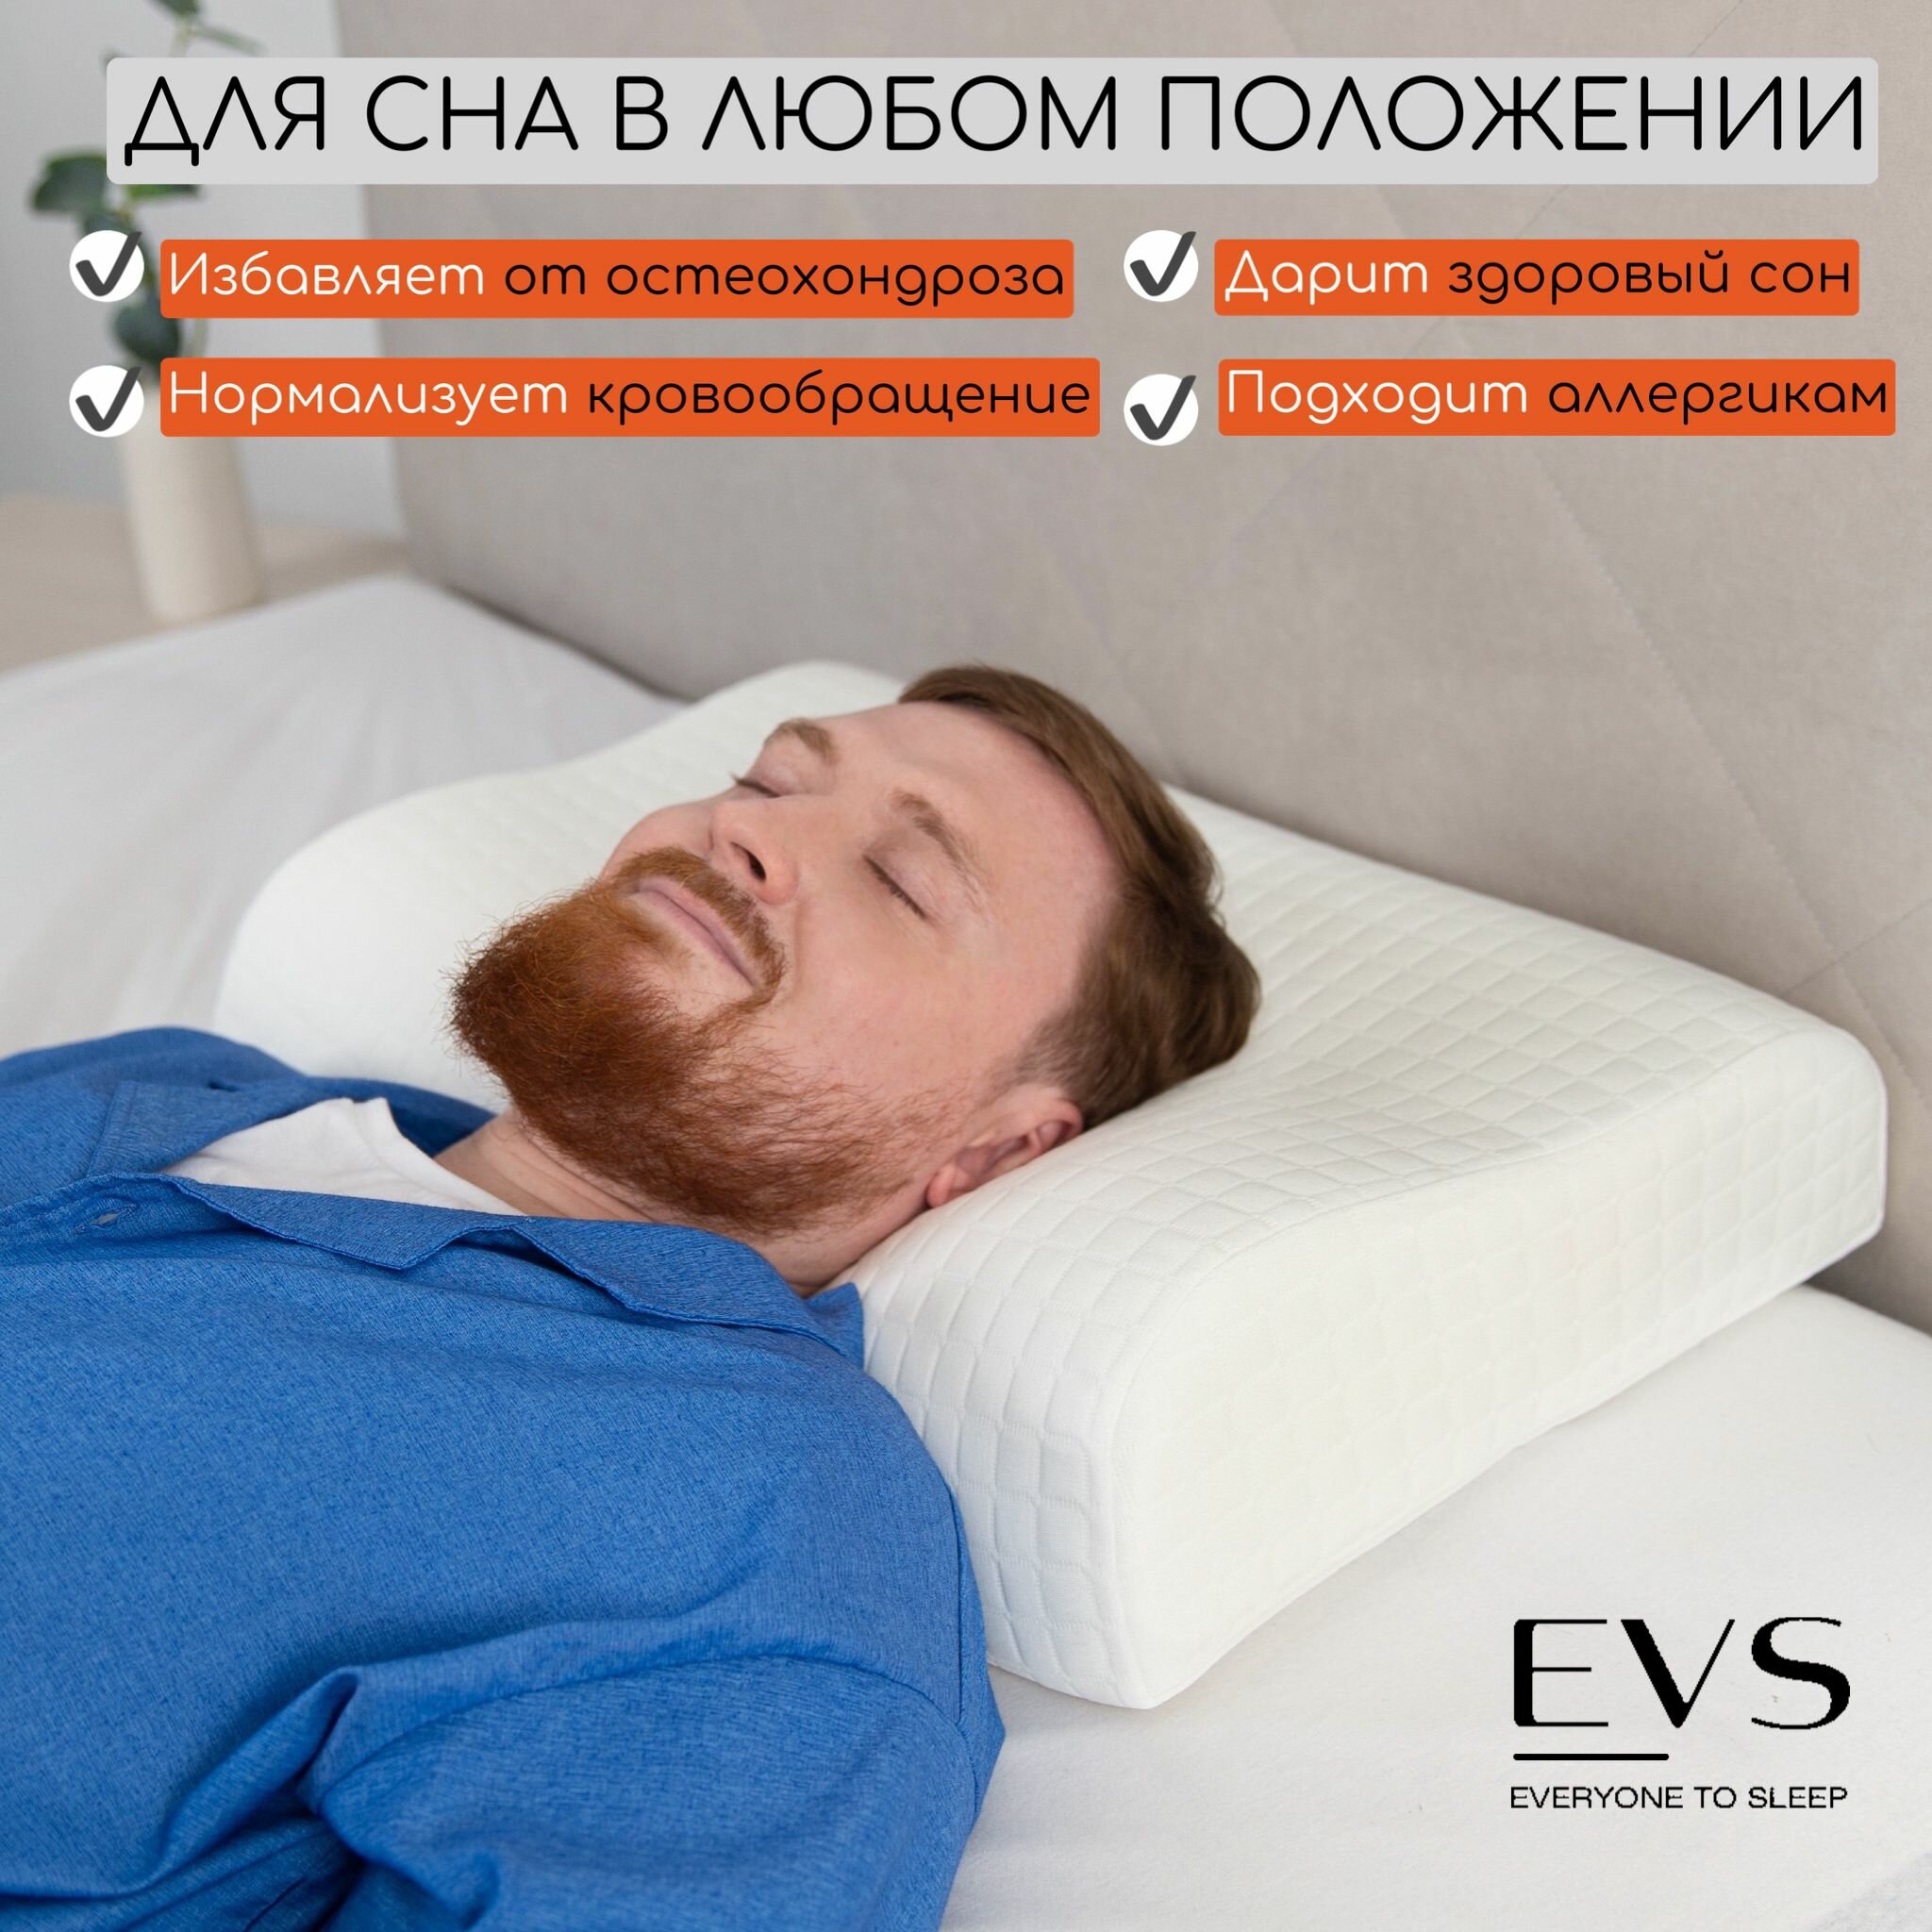 Подушка ортопедическая Ergonomic для сна с эффектом памяти 60x40, 11/13 для взрослых, чехол 100% хлопковый трикотаж, наполнитель пенополиуретан